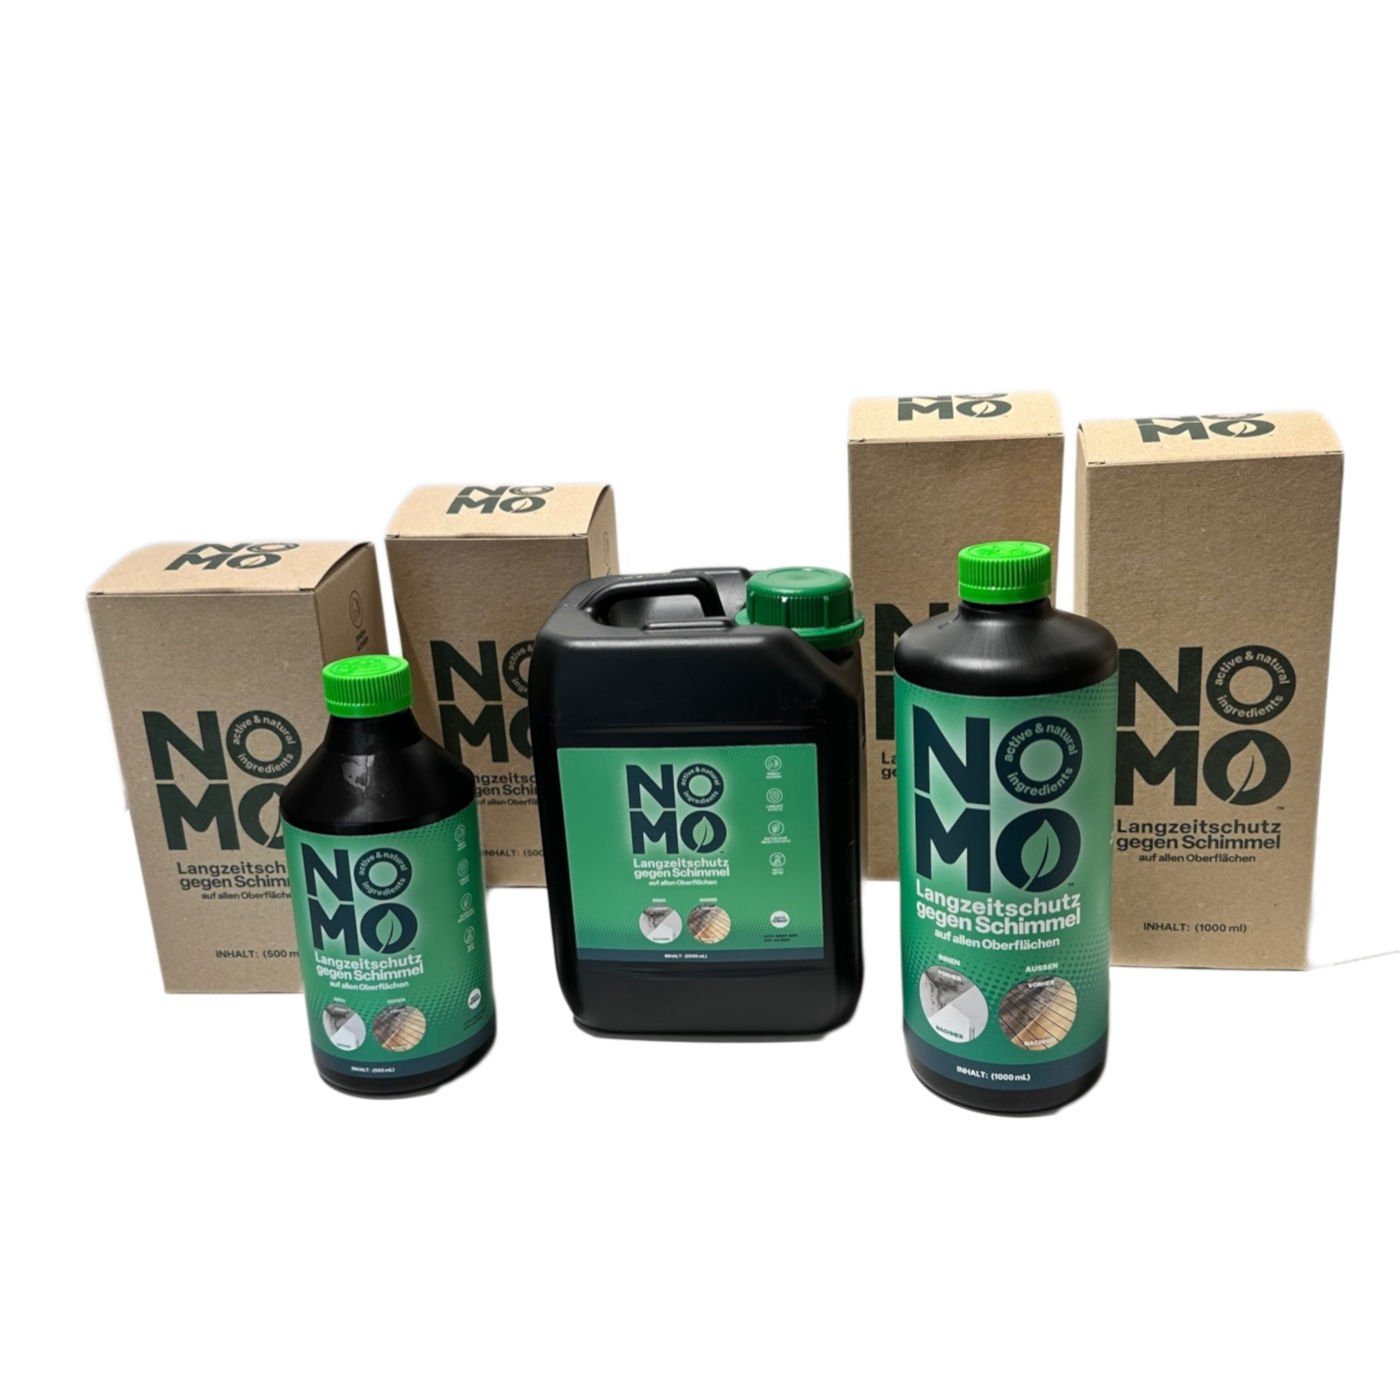 NOMO Natürlicher - gegen Liter 2,5 Schimmelentferner Langzeitschutz Schimmel